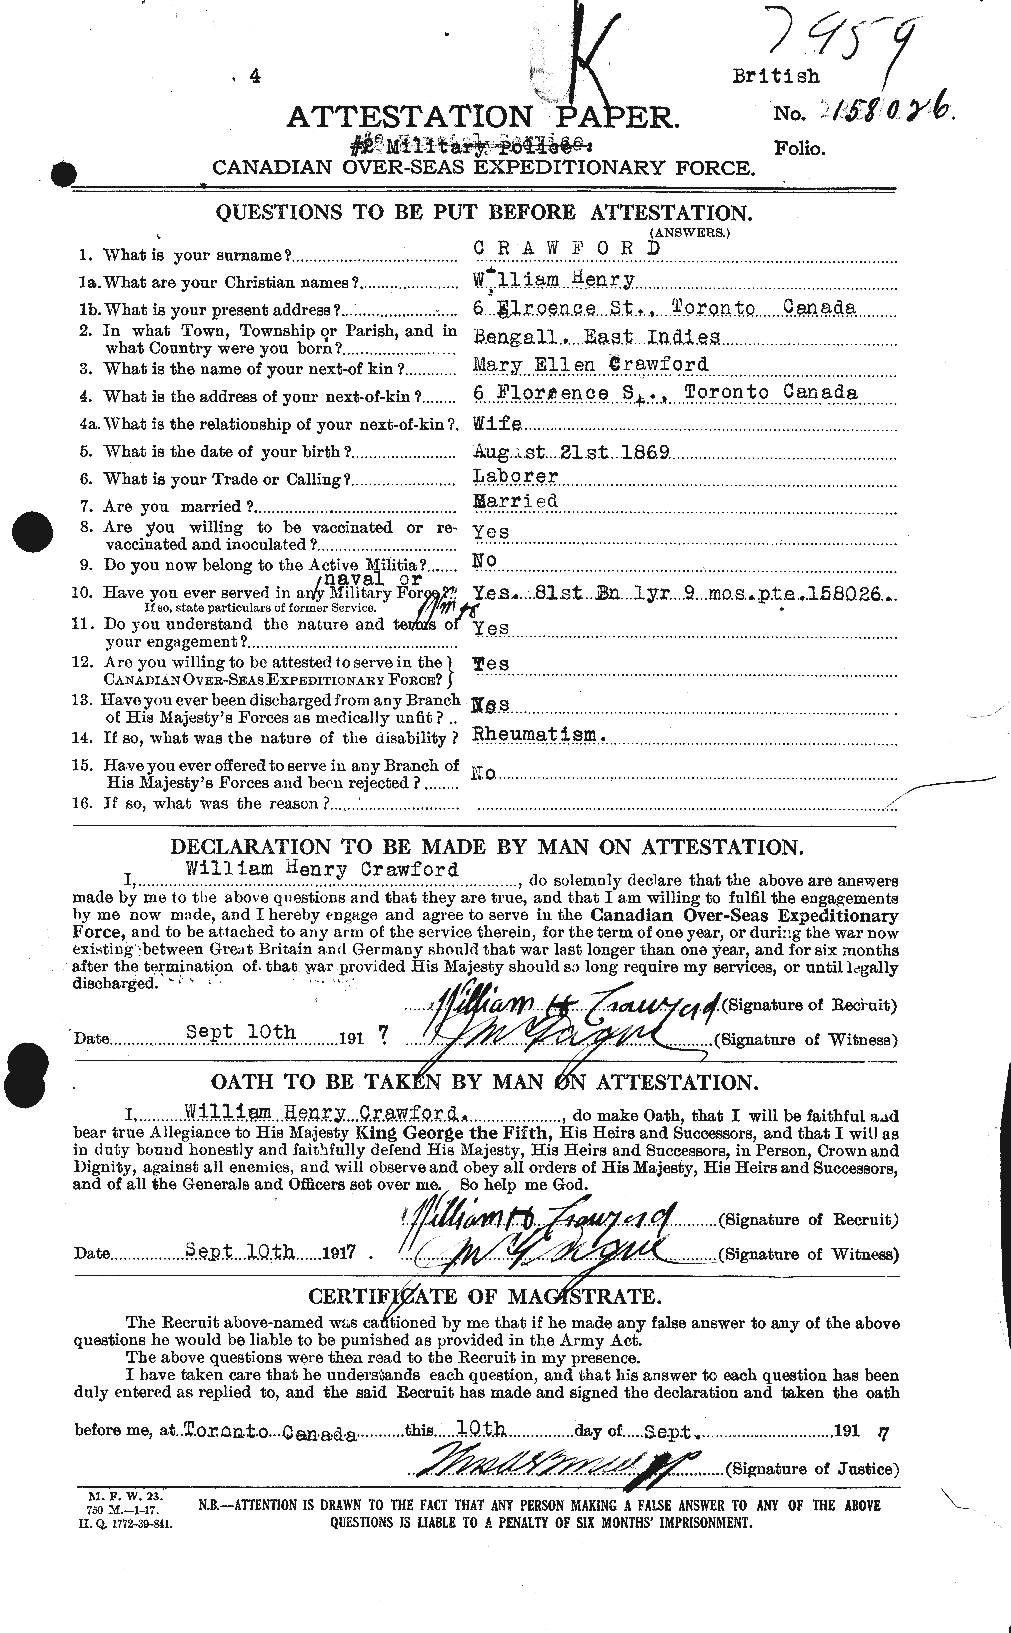 Dossiers du Personnel de la Première Guerre mondiale - CEC 061137a